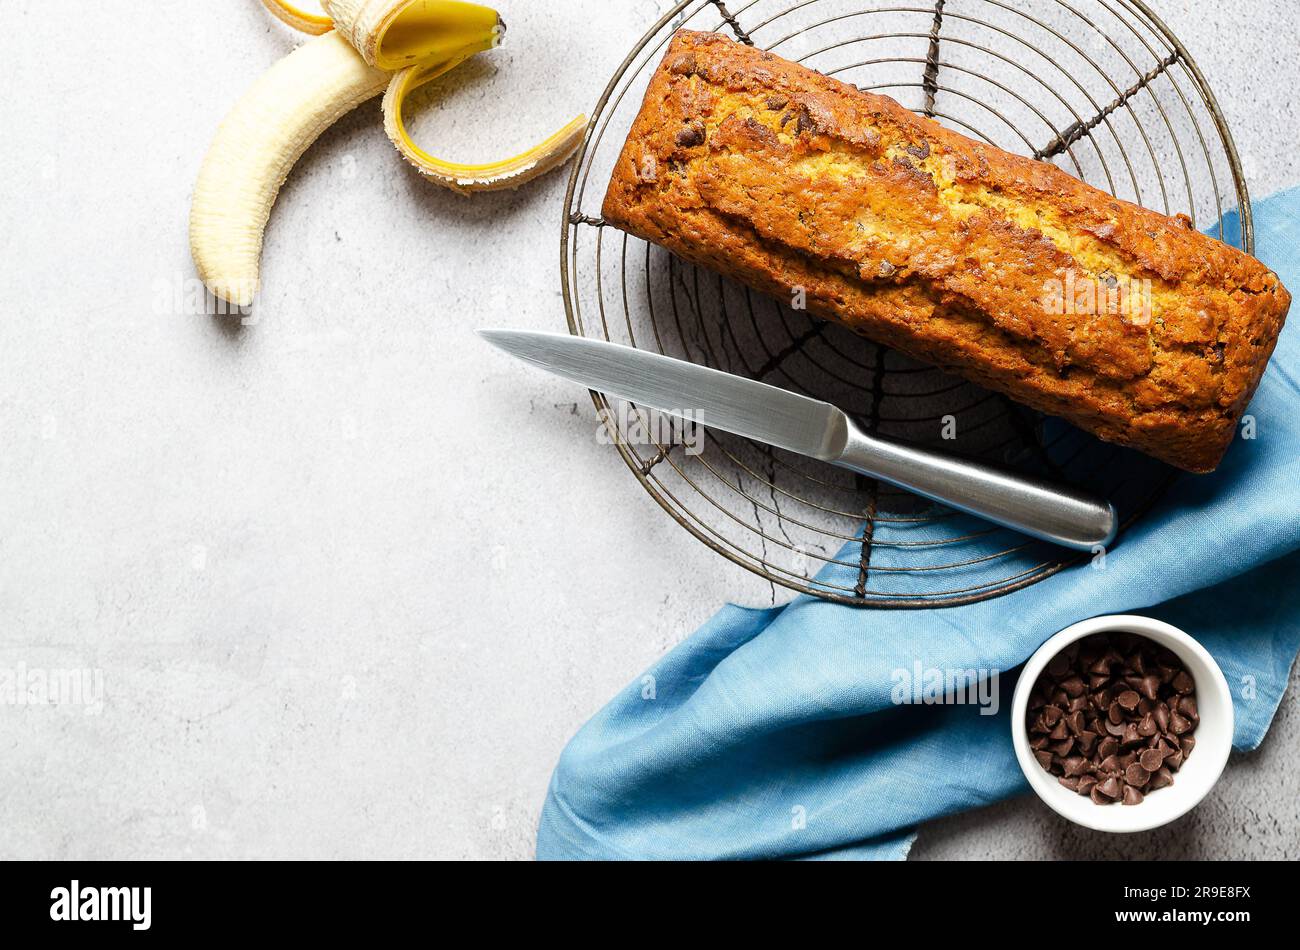 Un pane alla banana con gocce di cioccolato, una banana, gocce di cioccolato in una ciotola e un tovagliolo blu, su sfondo grigio. Foto Stock